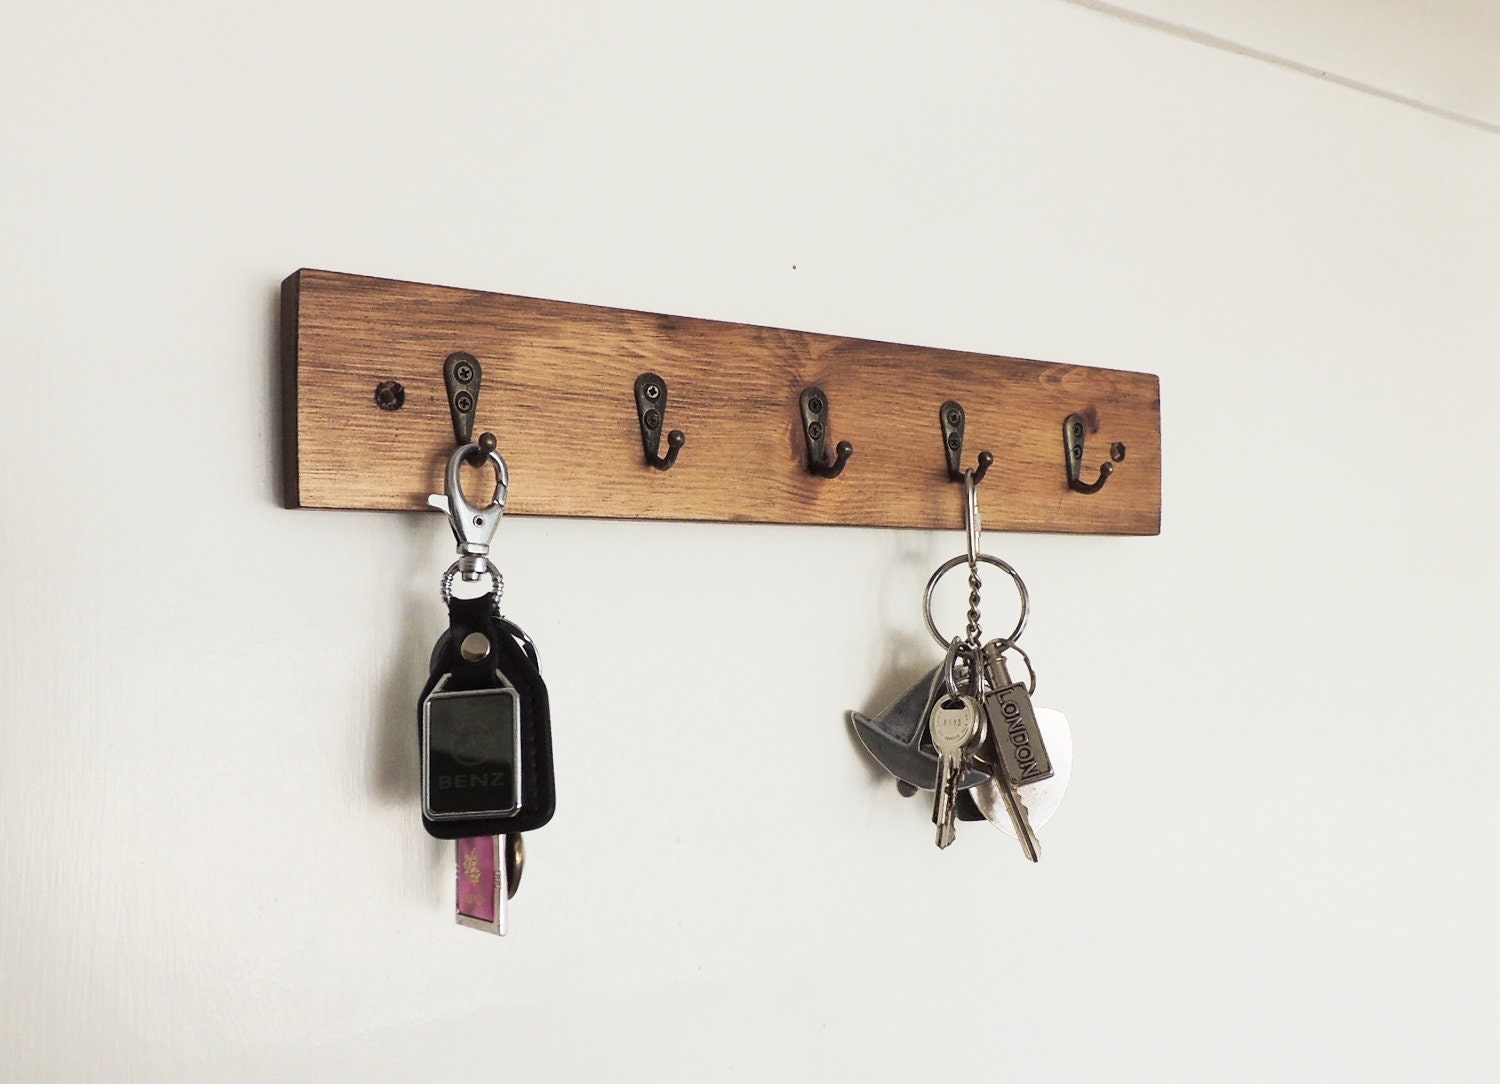 86x90x6 cm, Vintage 24-ganchos, Tabla para colgar llaves de pared, Colgadores de llaves de pared de entrada